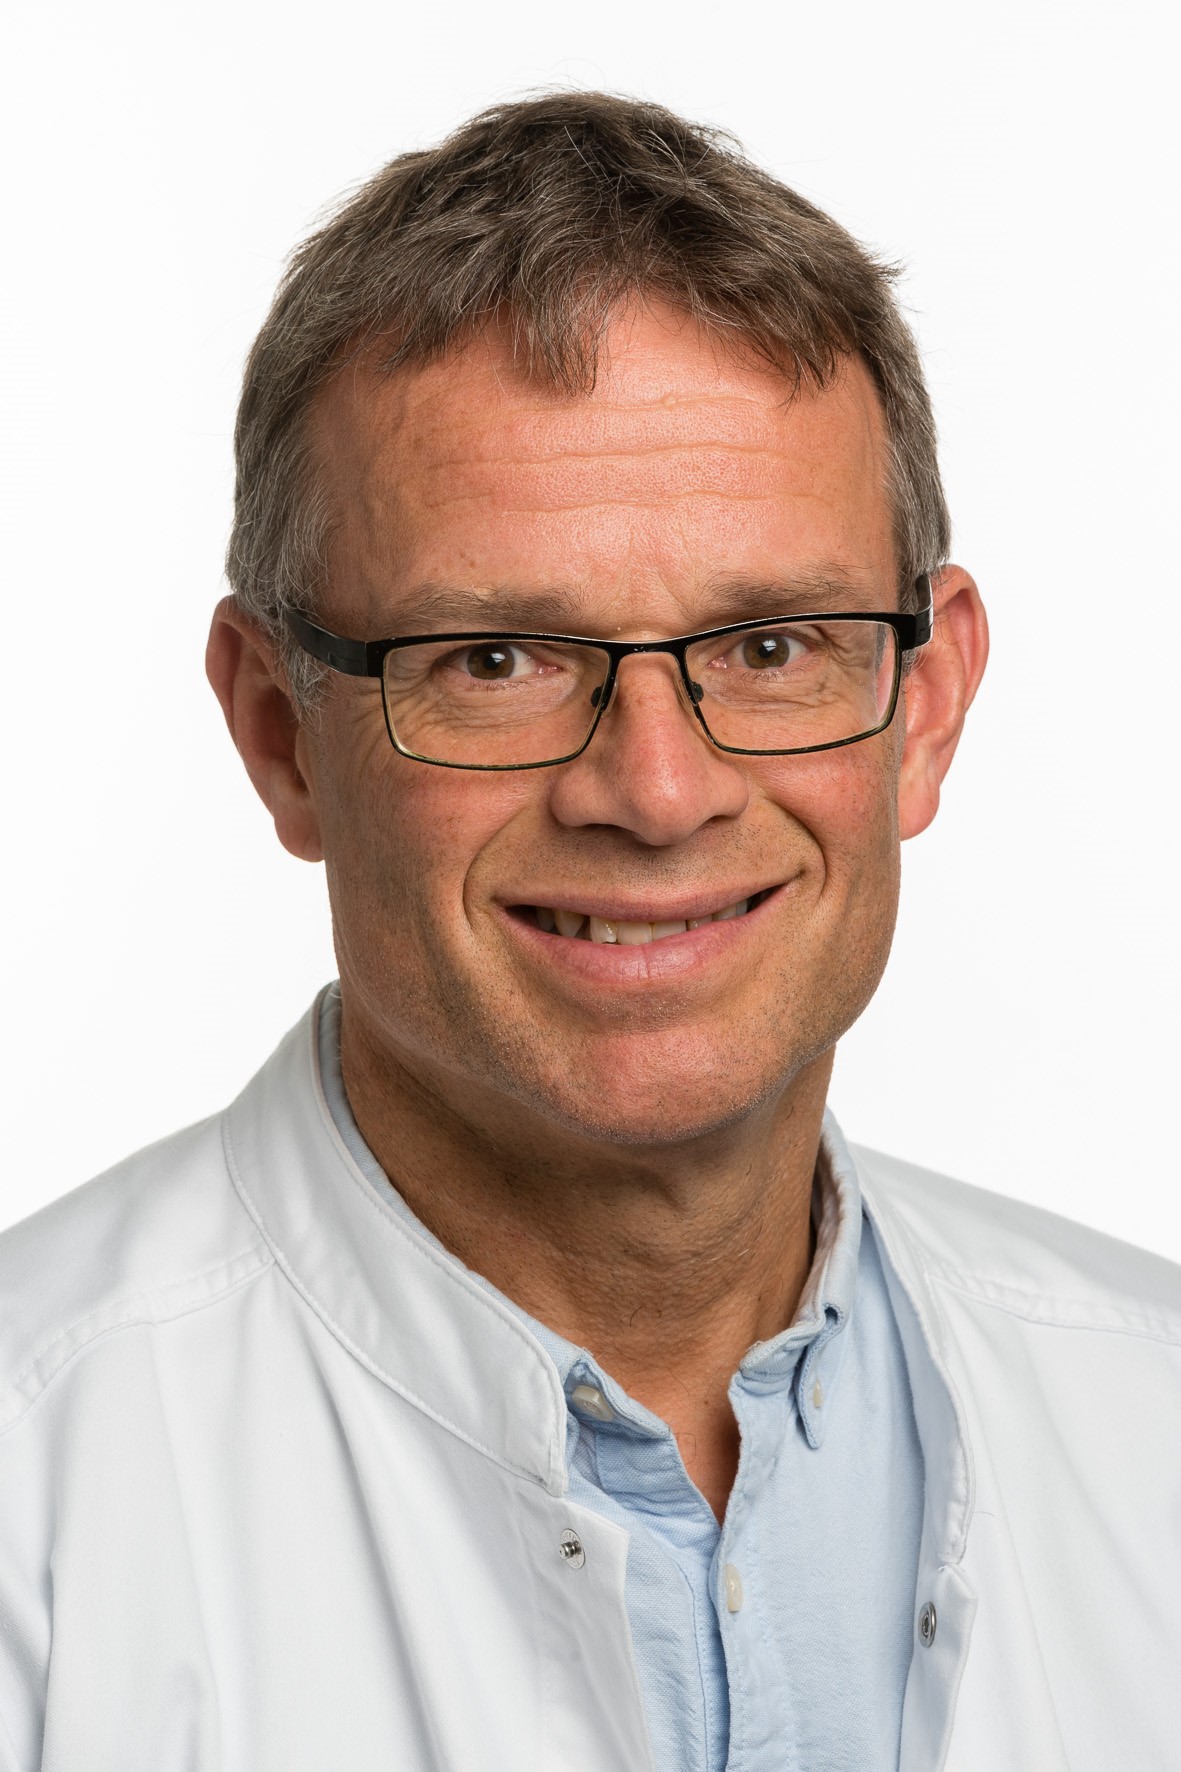 [Translate to English:] Martin Lind er ny klinisk lærestolsprofessor på Institut for Klinisk Medicin, hvor han har specialiseret sig inden for ortopædkirurgi og idrætstraumatologi. Foto:Michael Harder.